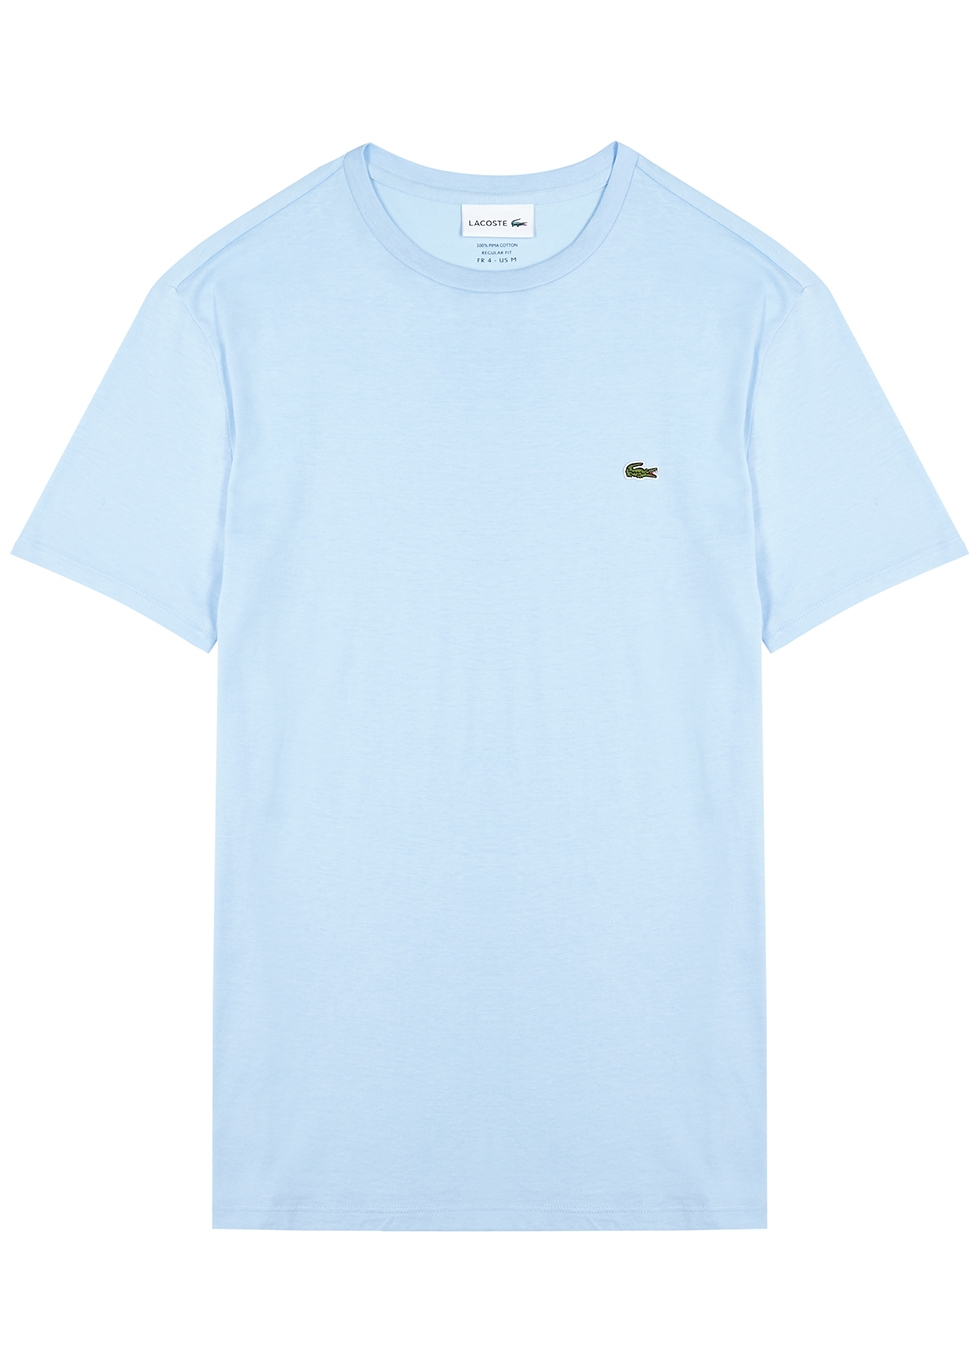 Lacoste Light blue cotton T-shirt 